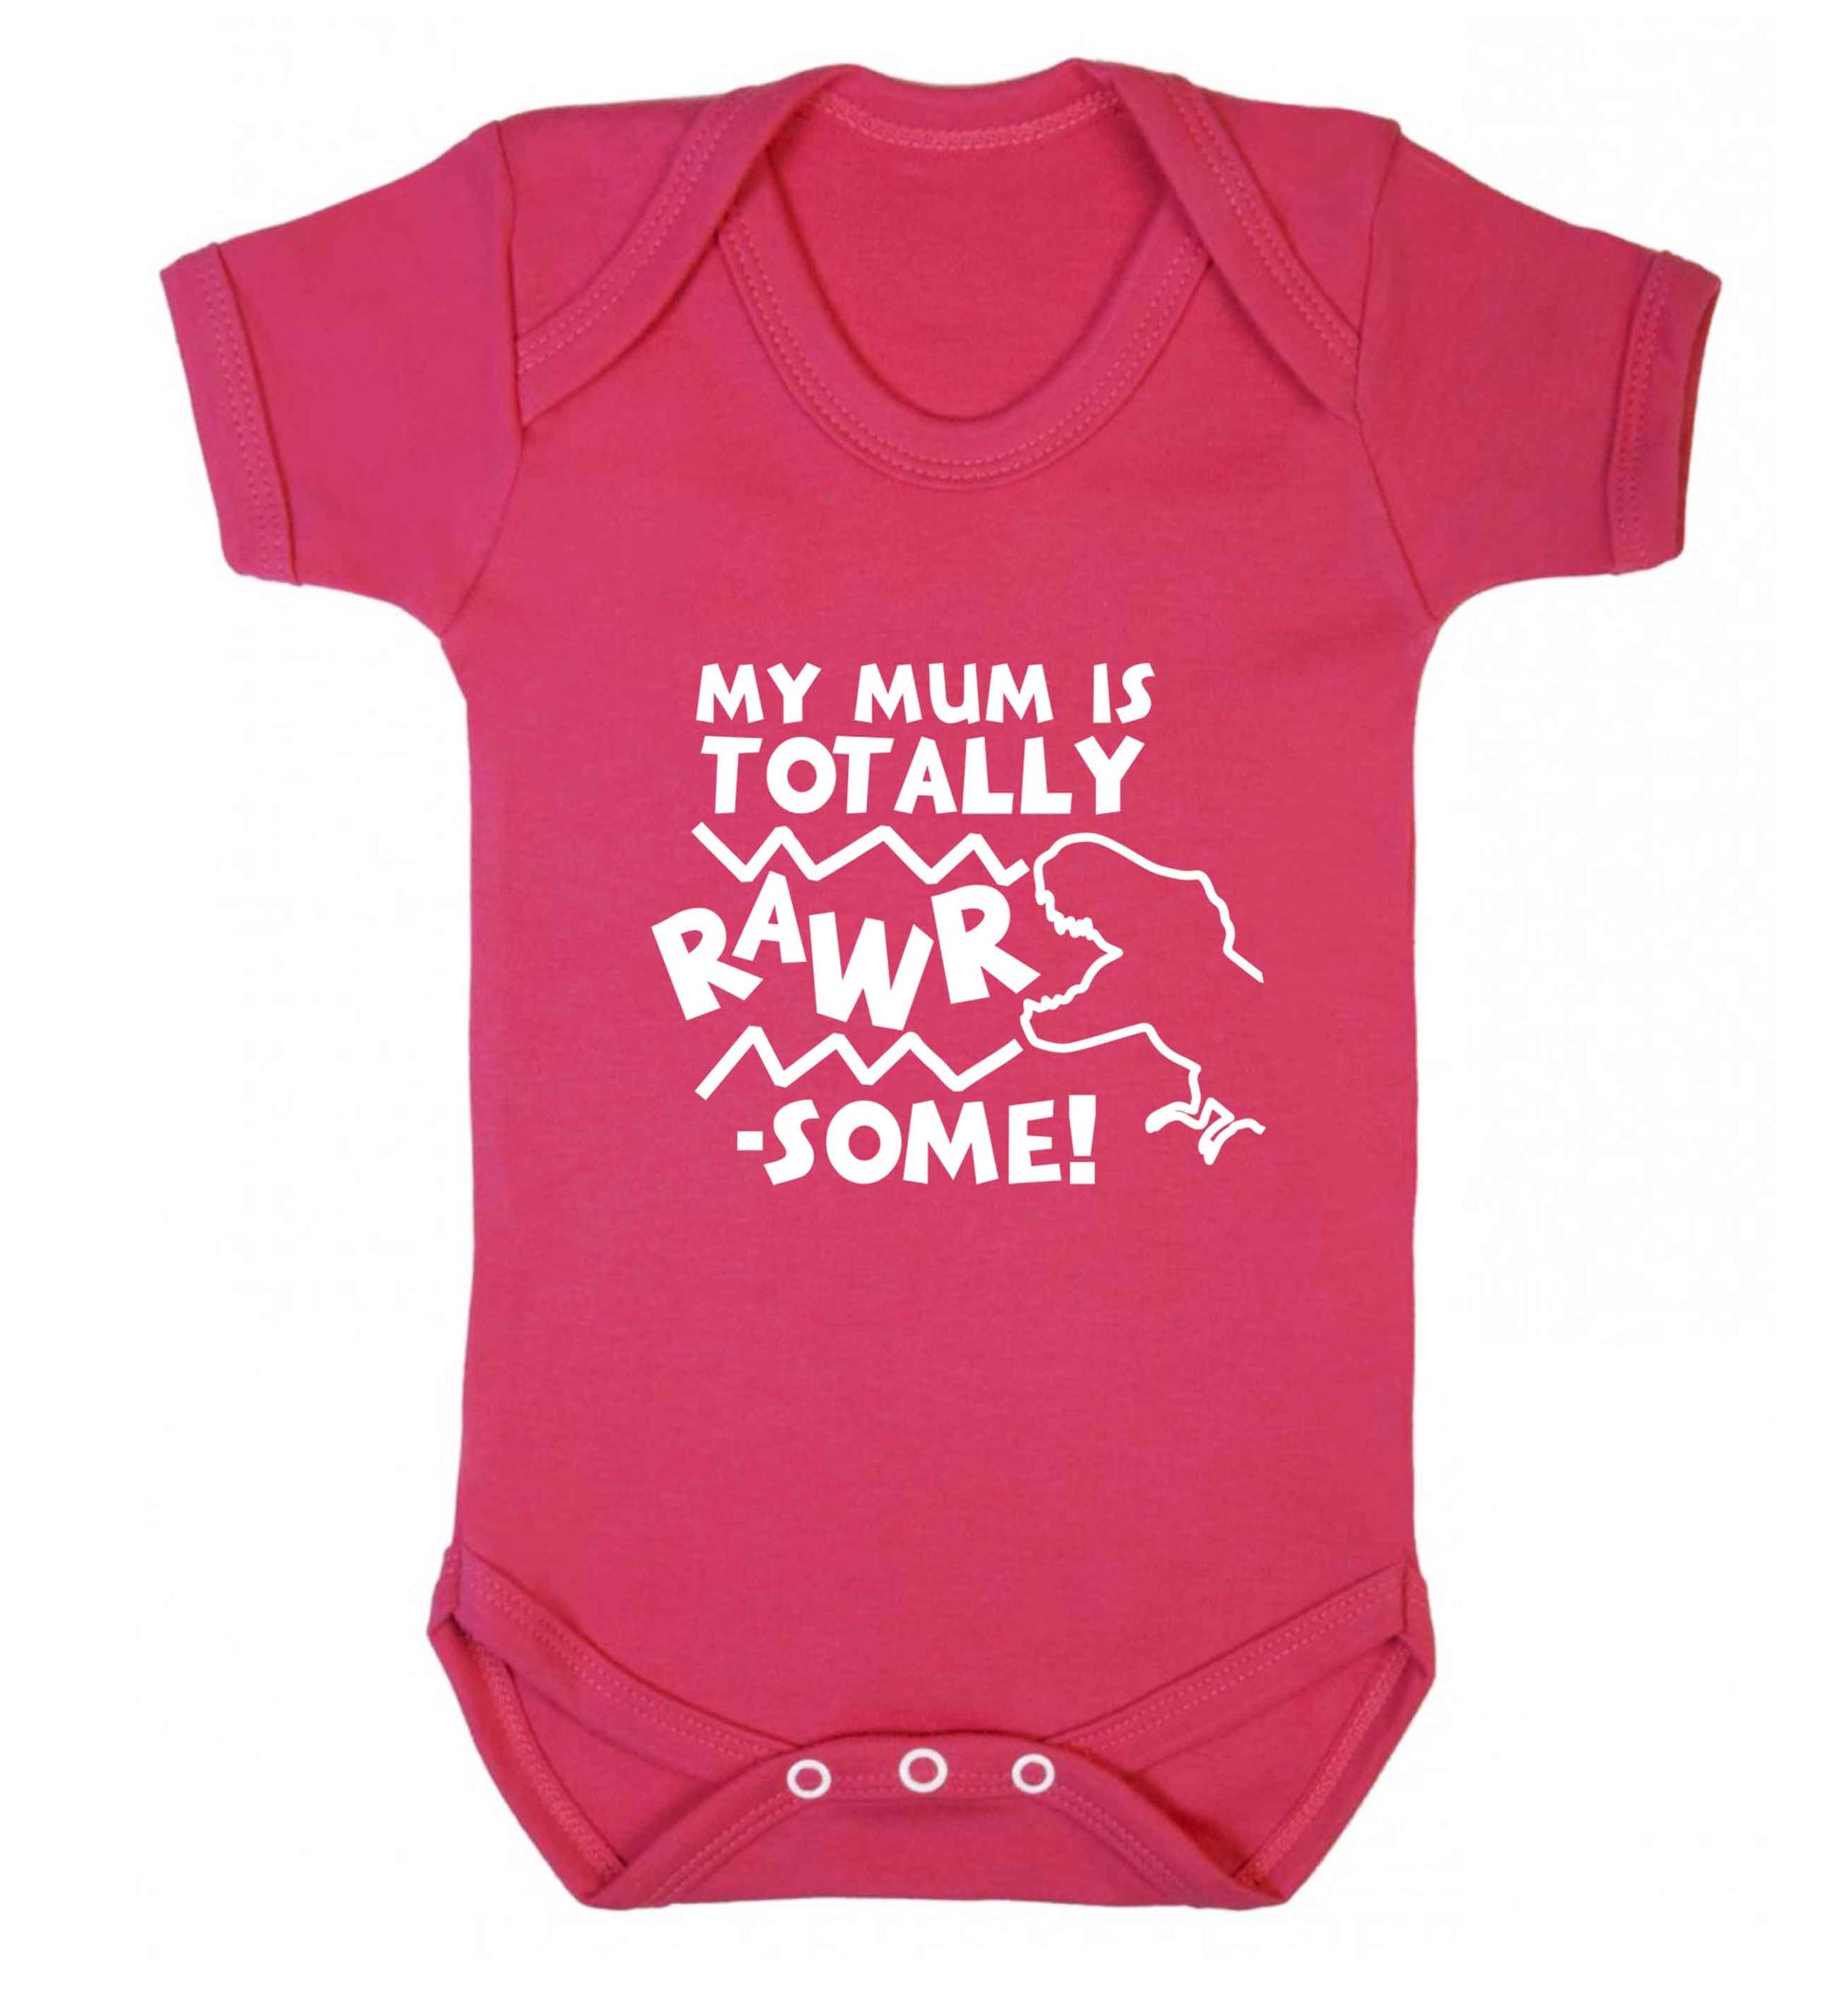 My mum is totally rawrsome baby vest dark pink 18-24 months